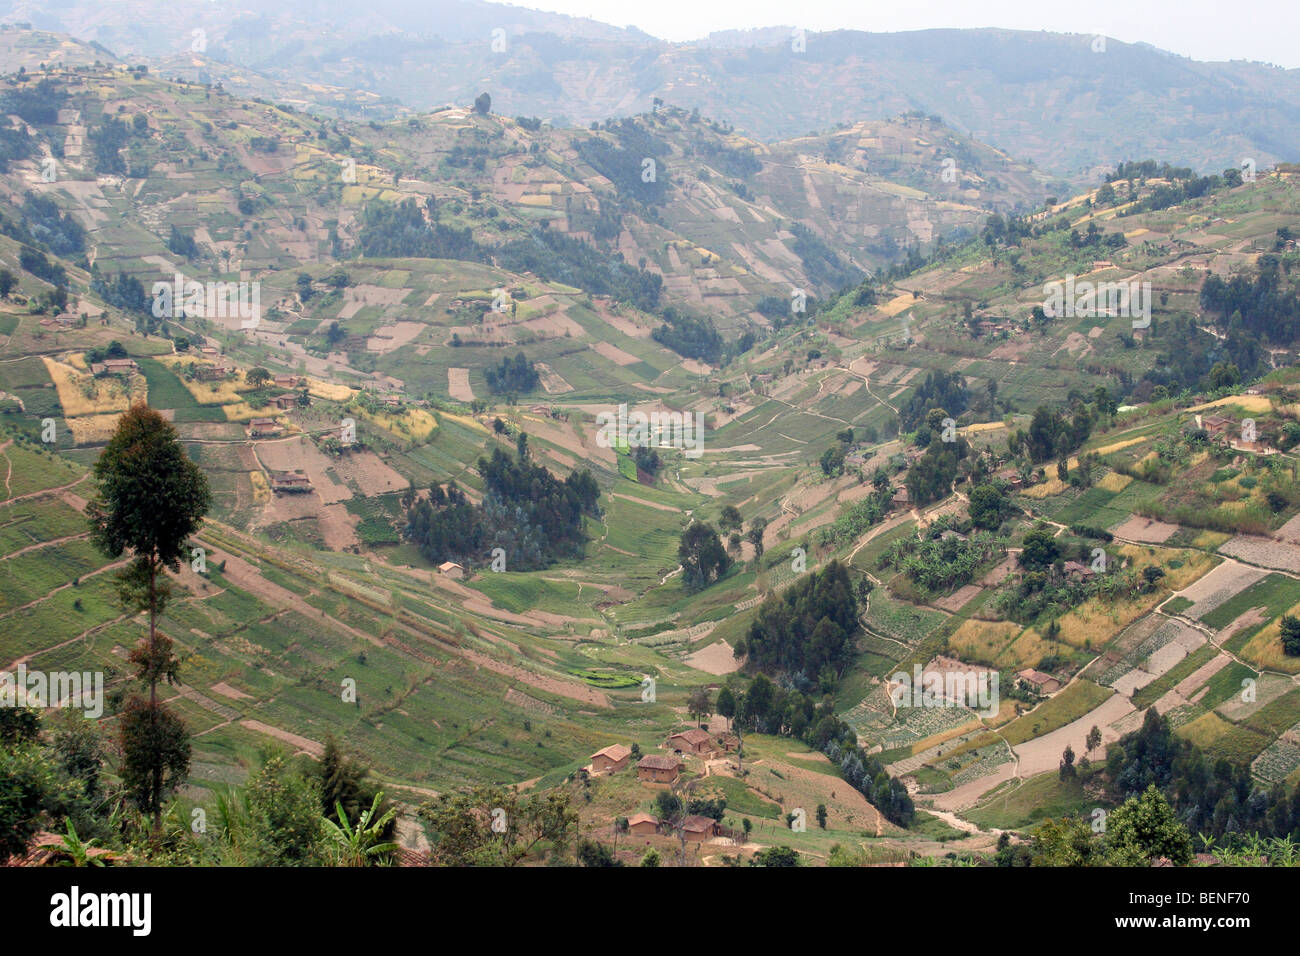 Les terres agricoles avec des champs et fermes après le déboisement de forêt tropicale dans les collines, le Rwanda, l'Afrique Centrale Banque D'Images